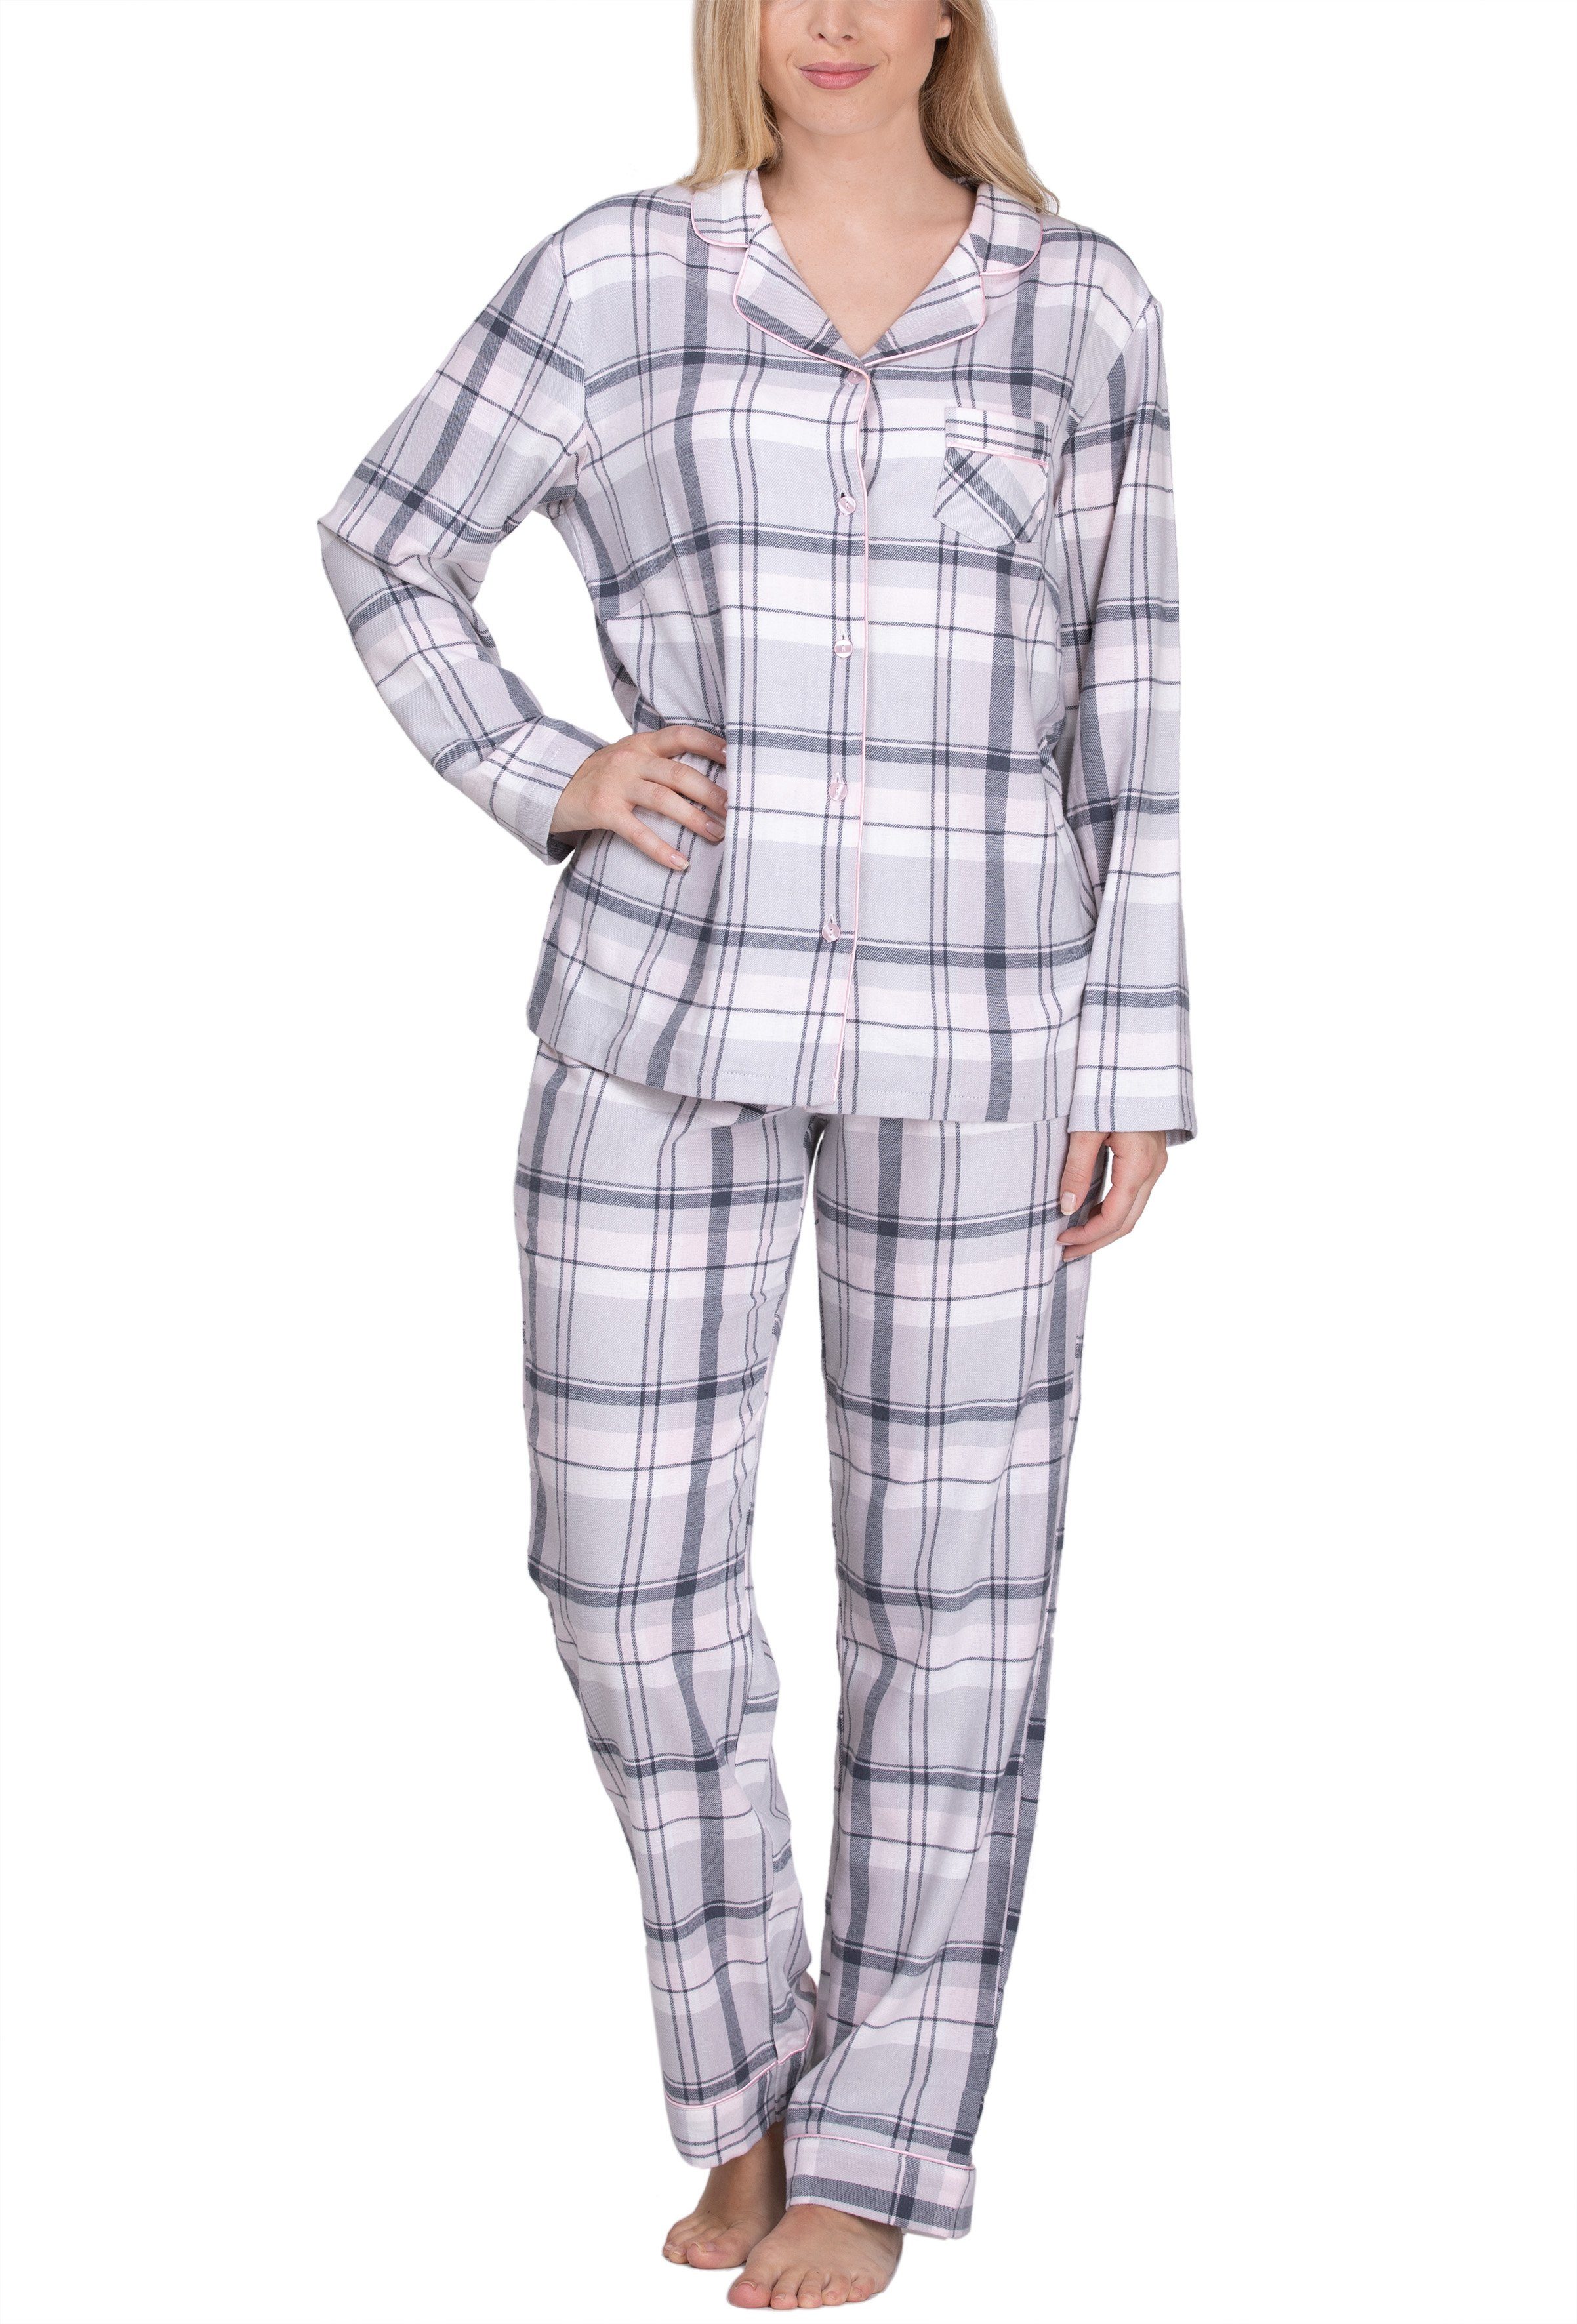 für Schlafanzug Flanell aus Pyjama Damen Baumwolle 100% maluuna